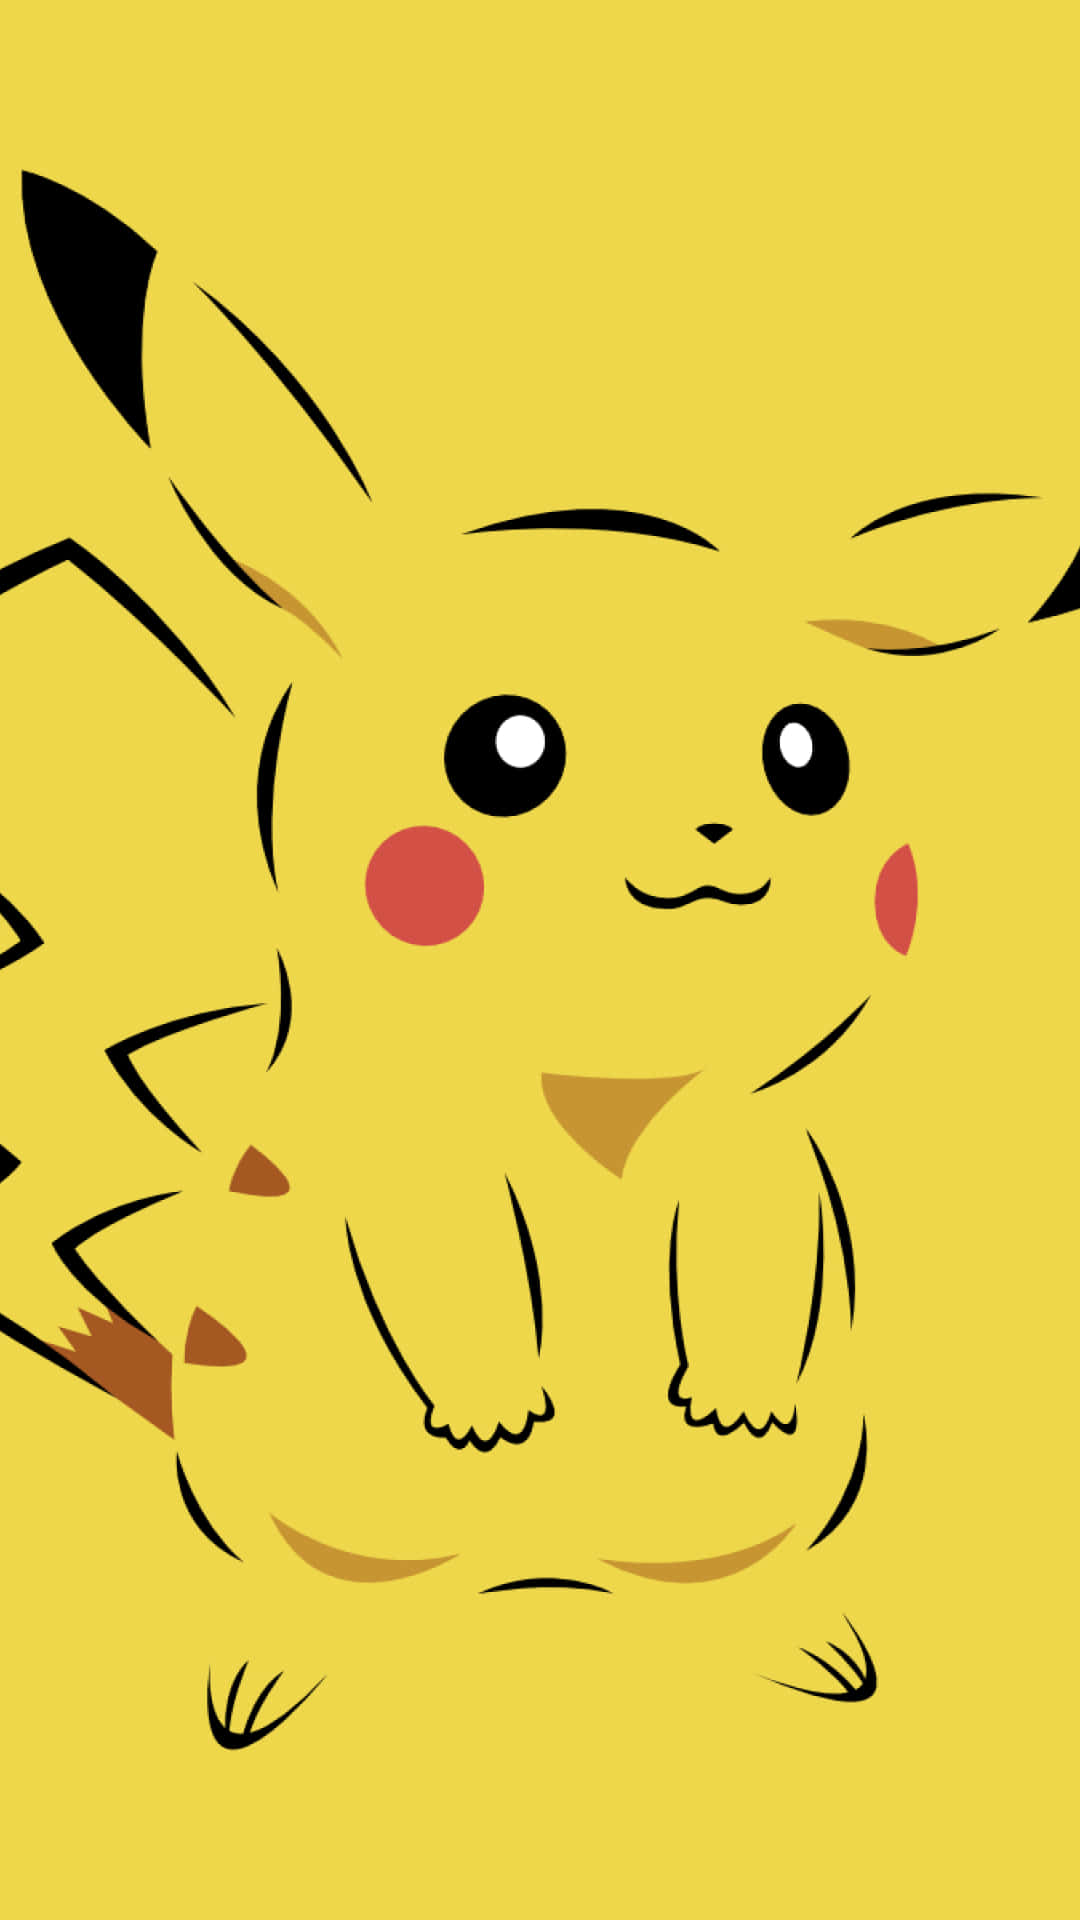 Imagende Arte Desvanecido De Pikachu